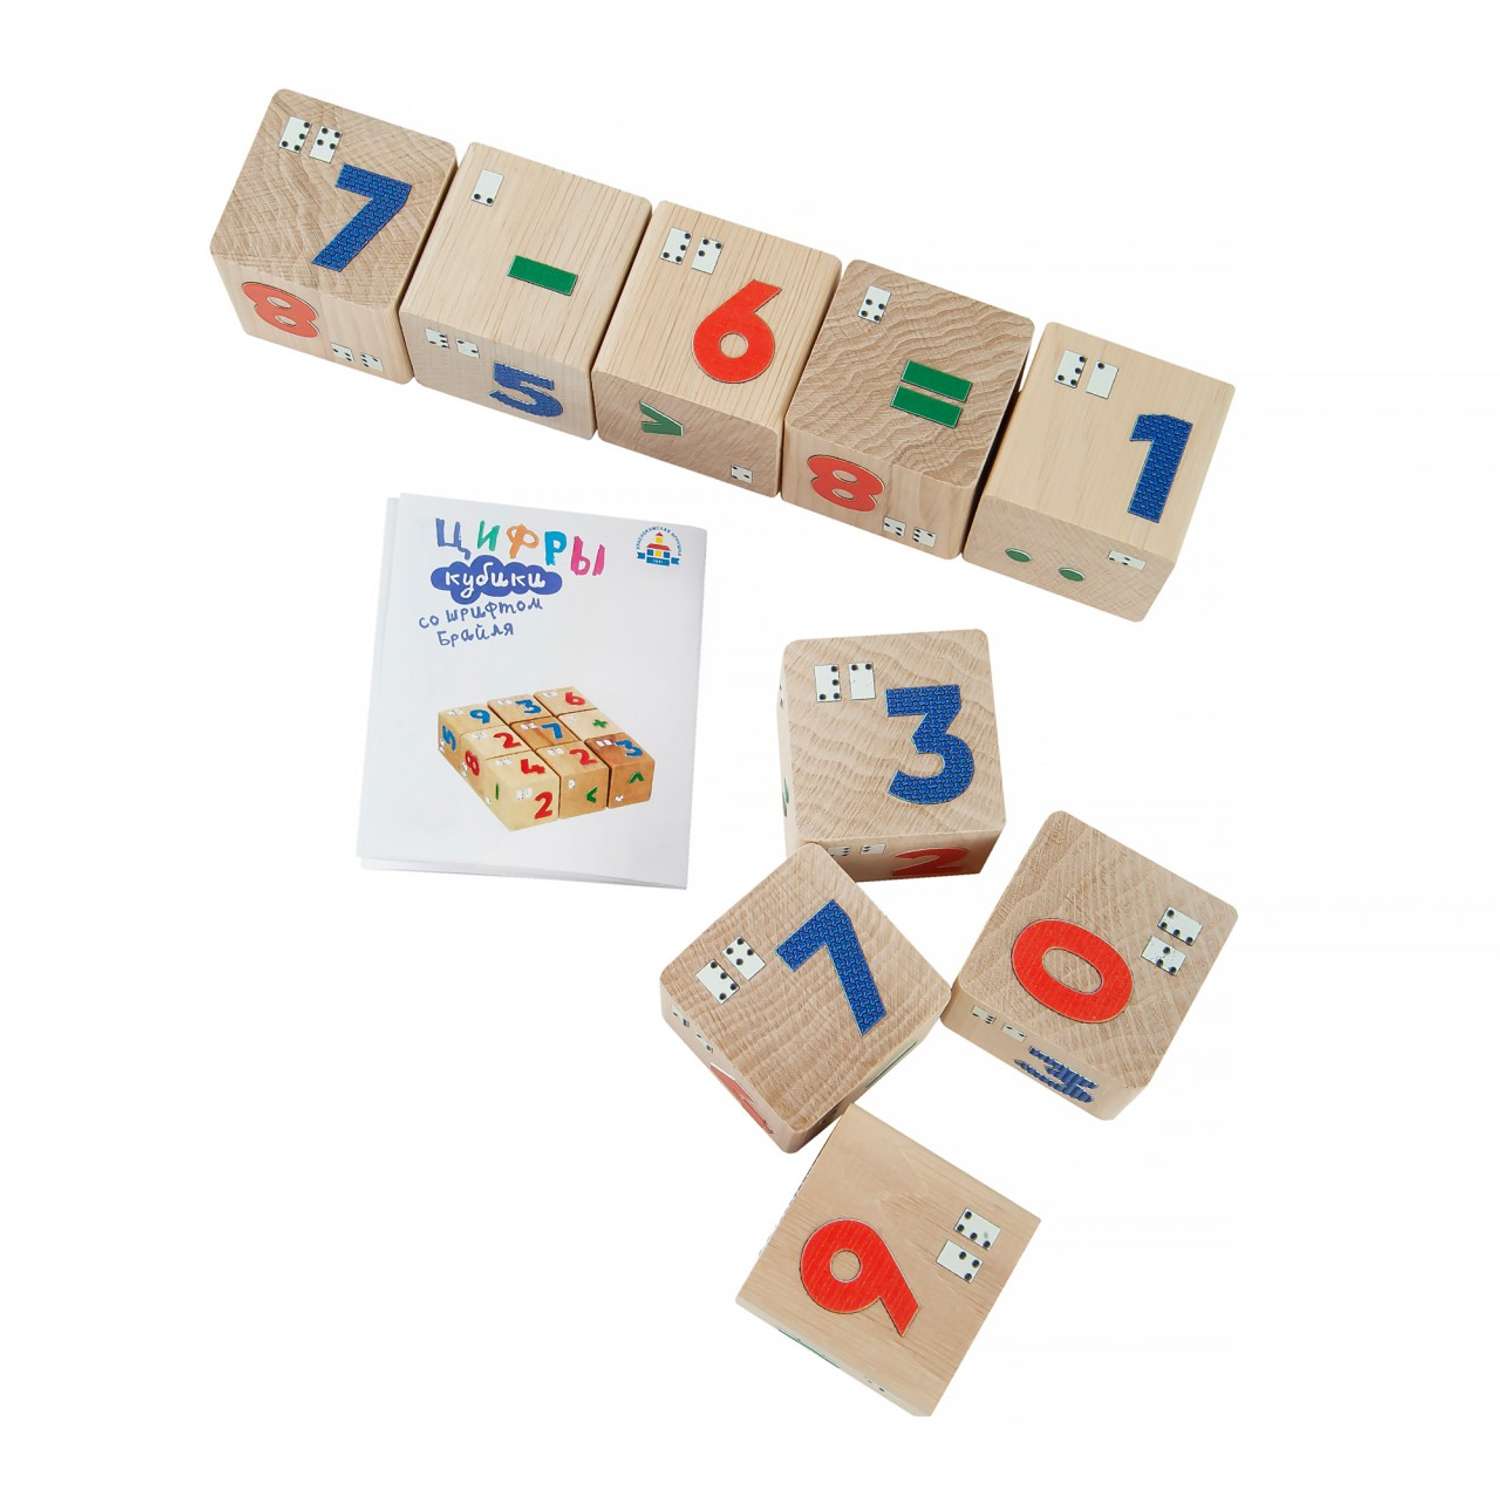 Кубики Краснокамская игрушка Цифры со шрифтом Брайля - фото 4